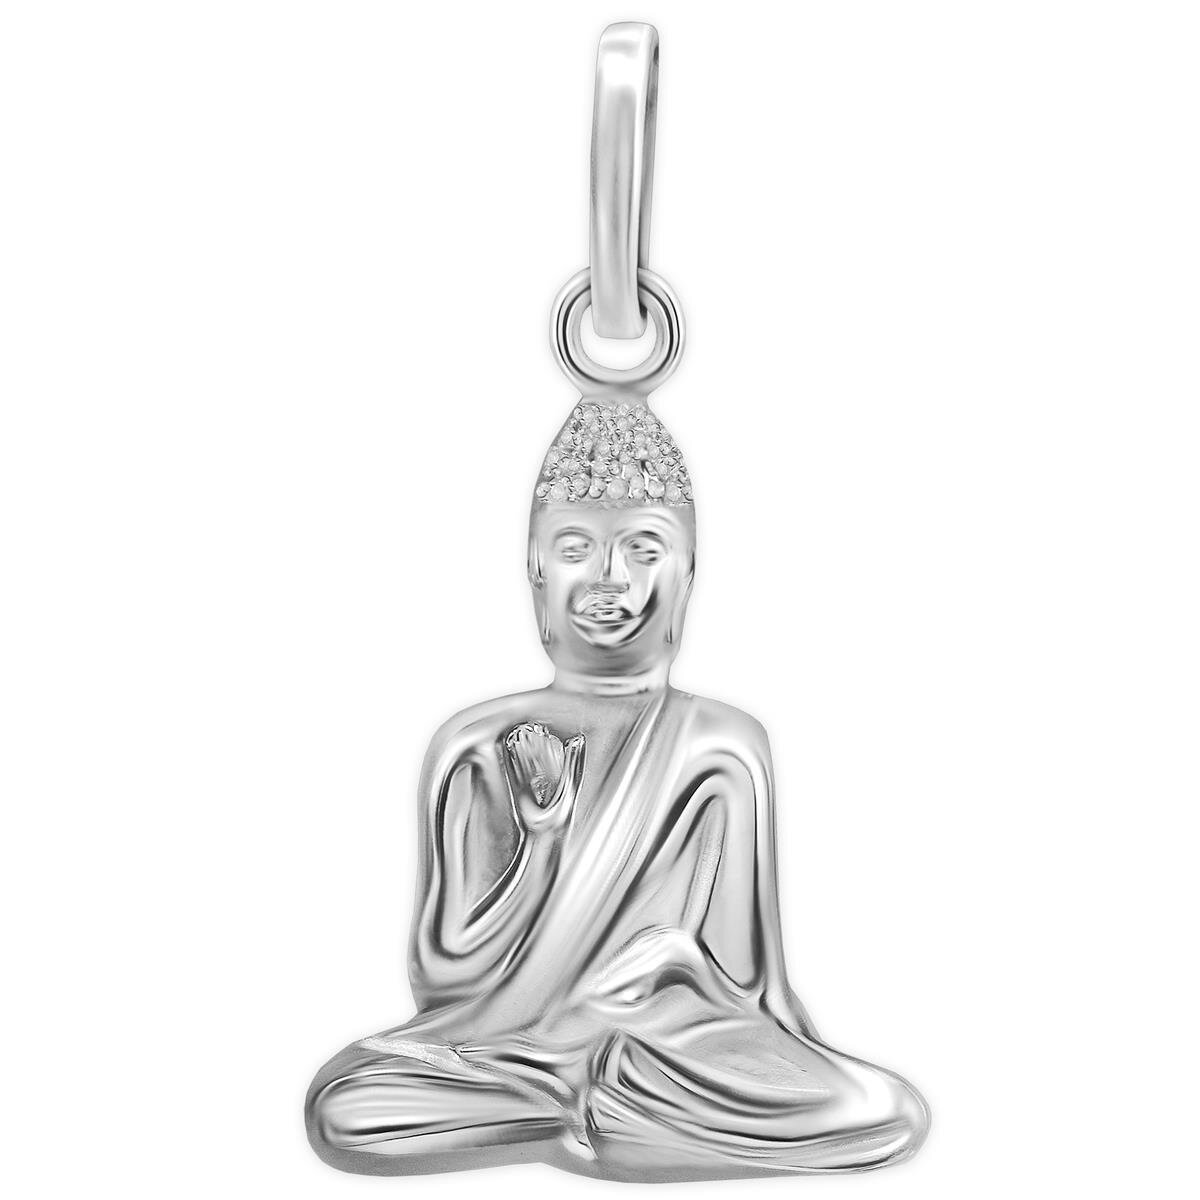 Silberner Anhänger Buddha schmal sitzend hochglänzend poliert Echt Silber 925